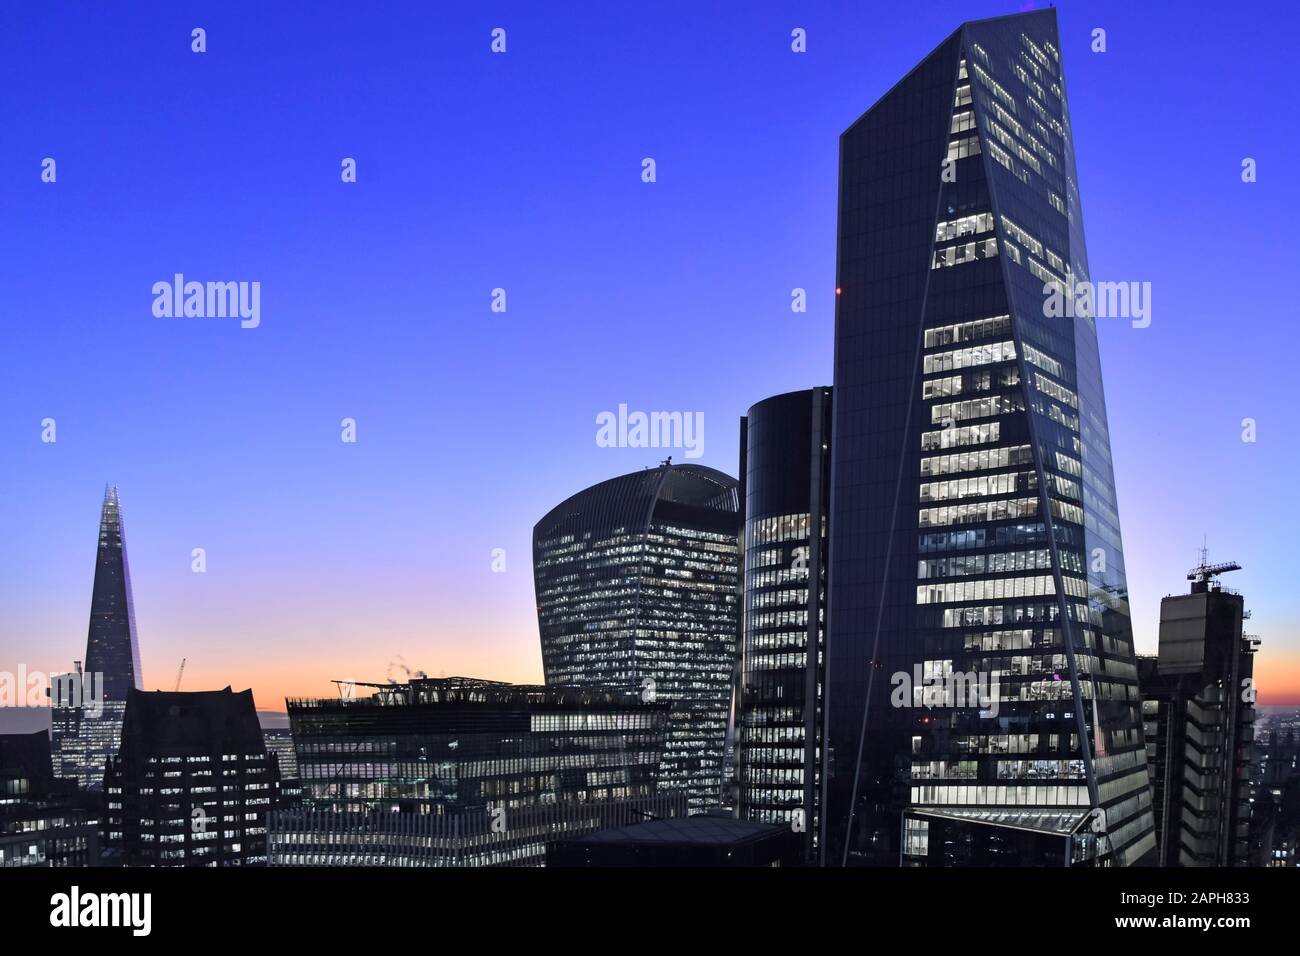 Bürofenster und Beleuchtung Dämmerung Himmel modernes Wolkenkratzer Scalpel Gebäude in der City of London Skyline mit Blick auf den Wahrzeichen Walkie Talkie & Shard England UK Stockfoto